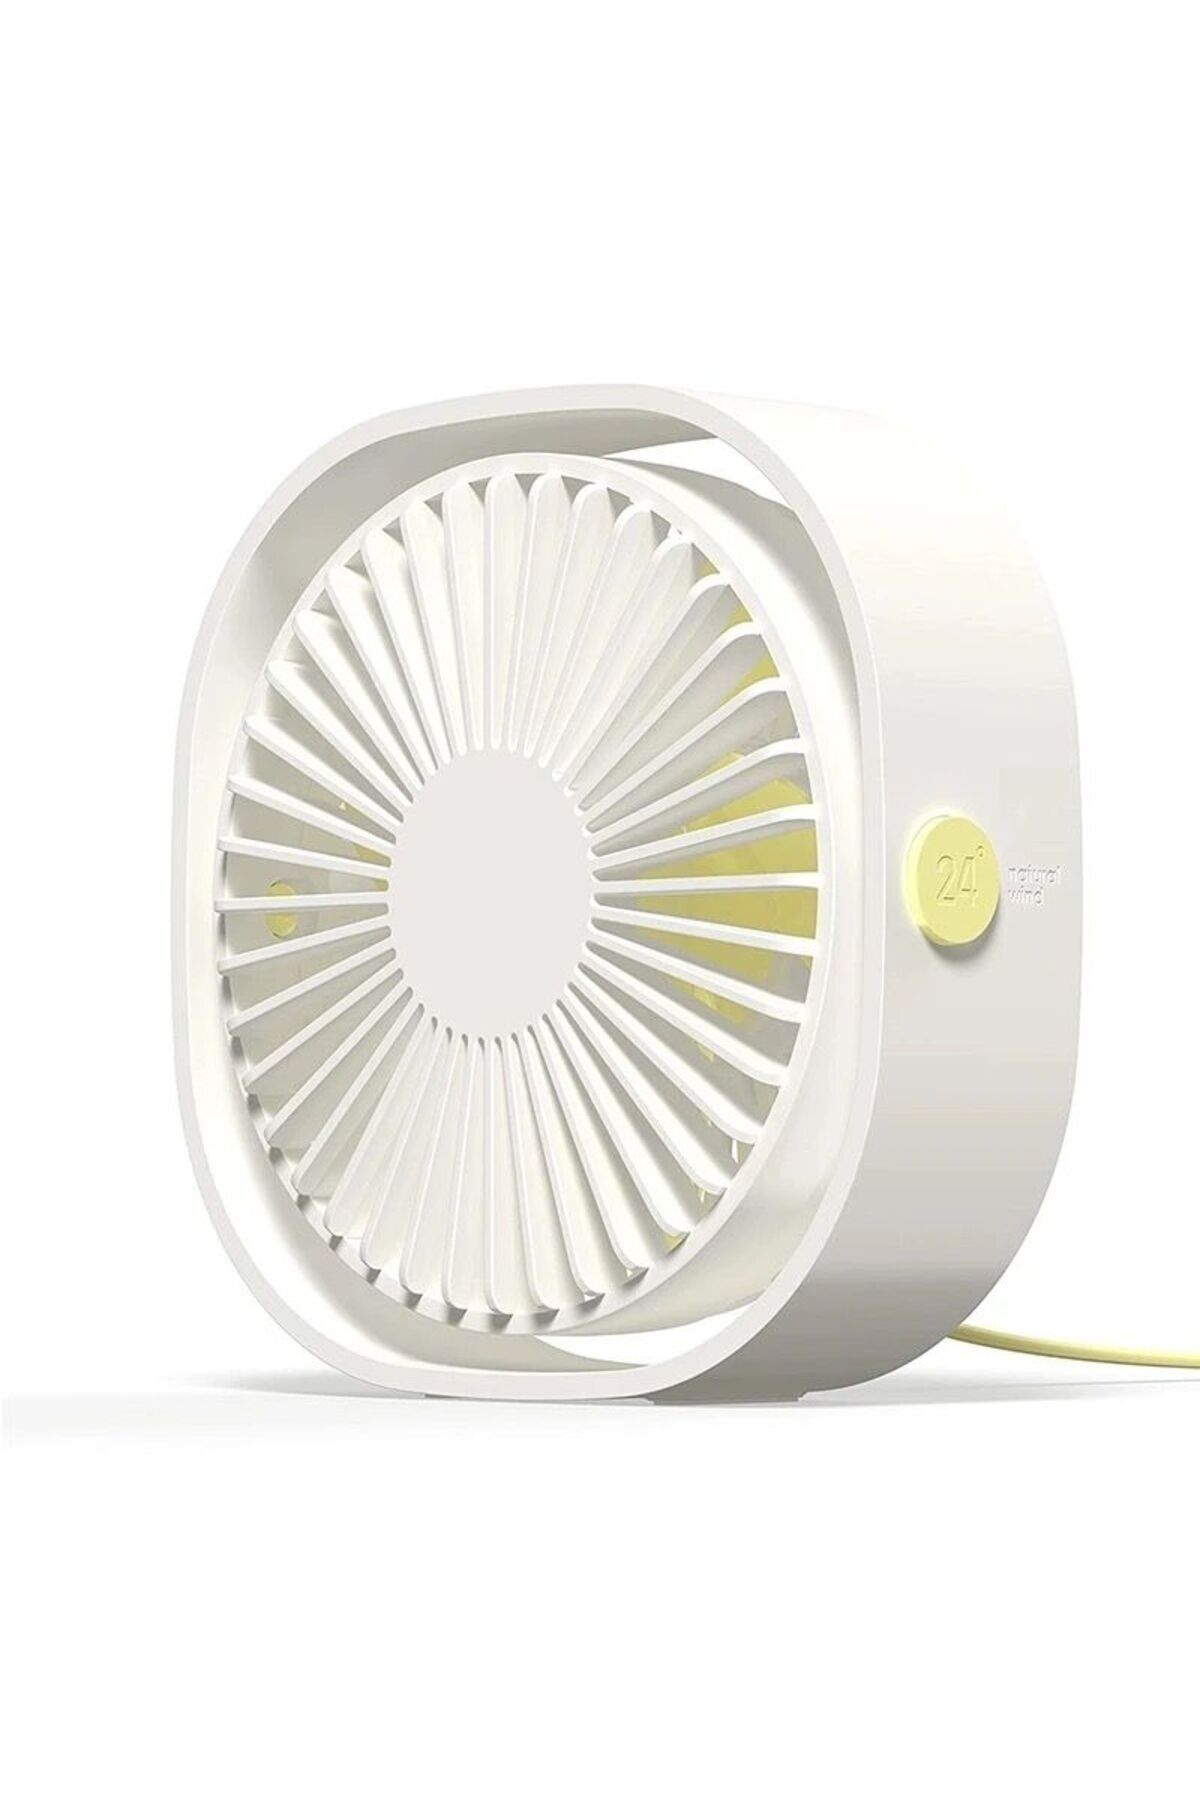 VOOKA Fan Soğutucu Mini Vantilatör Klima Güçlü Serinletici Taşınabilir Şarjlı Masa Üstü Sessiz Ayaklı